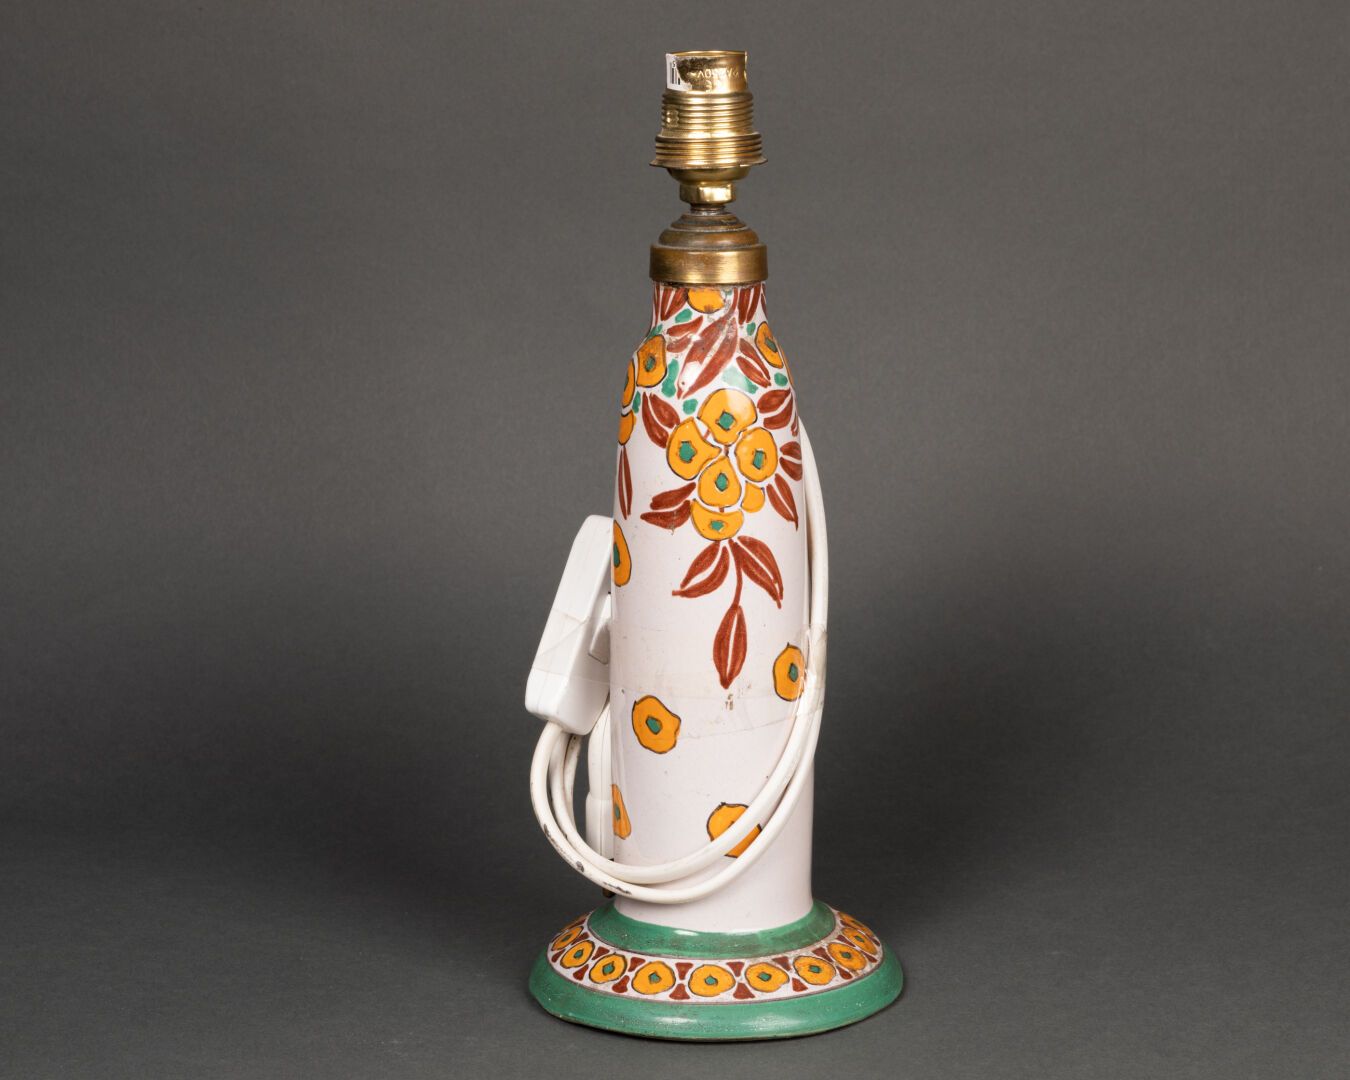 QUIMPER PIED de LAMPE à décor floral stylisé 

Faïence émaillée polychrome 

Man&hellip;